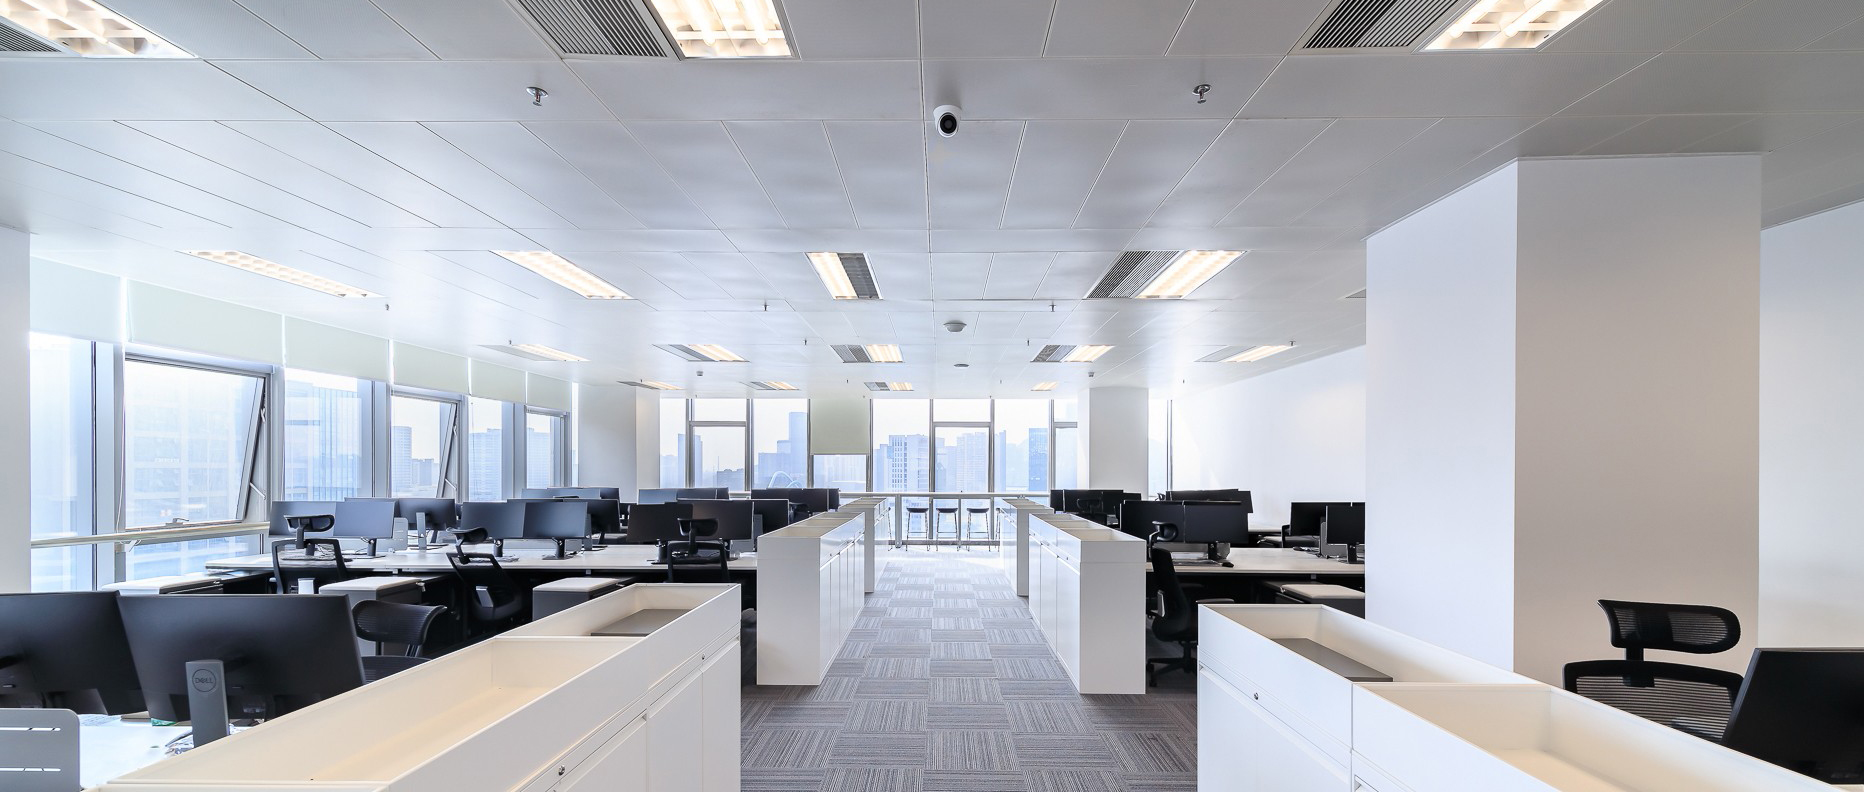 老板办公空间设计的设计方案有什么特点？每平方米办公楼的装修价格是多少？ 